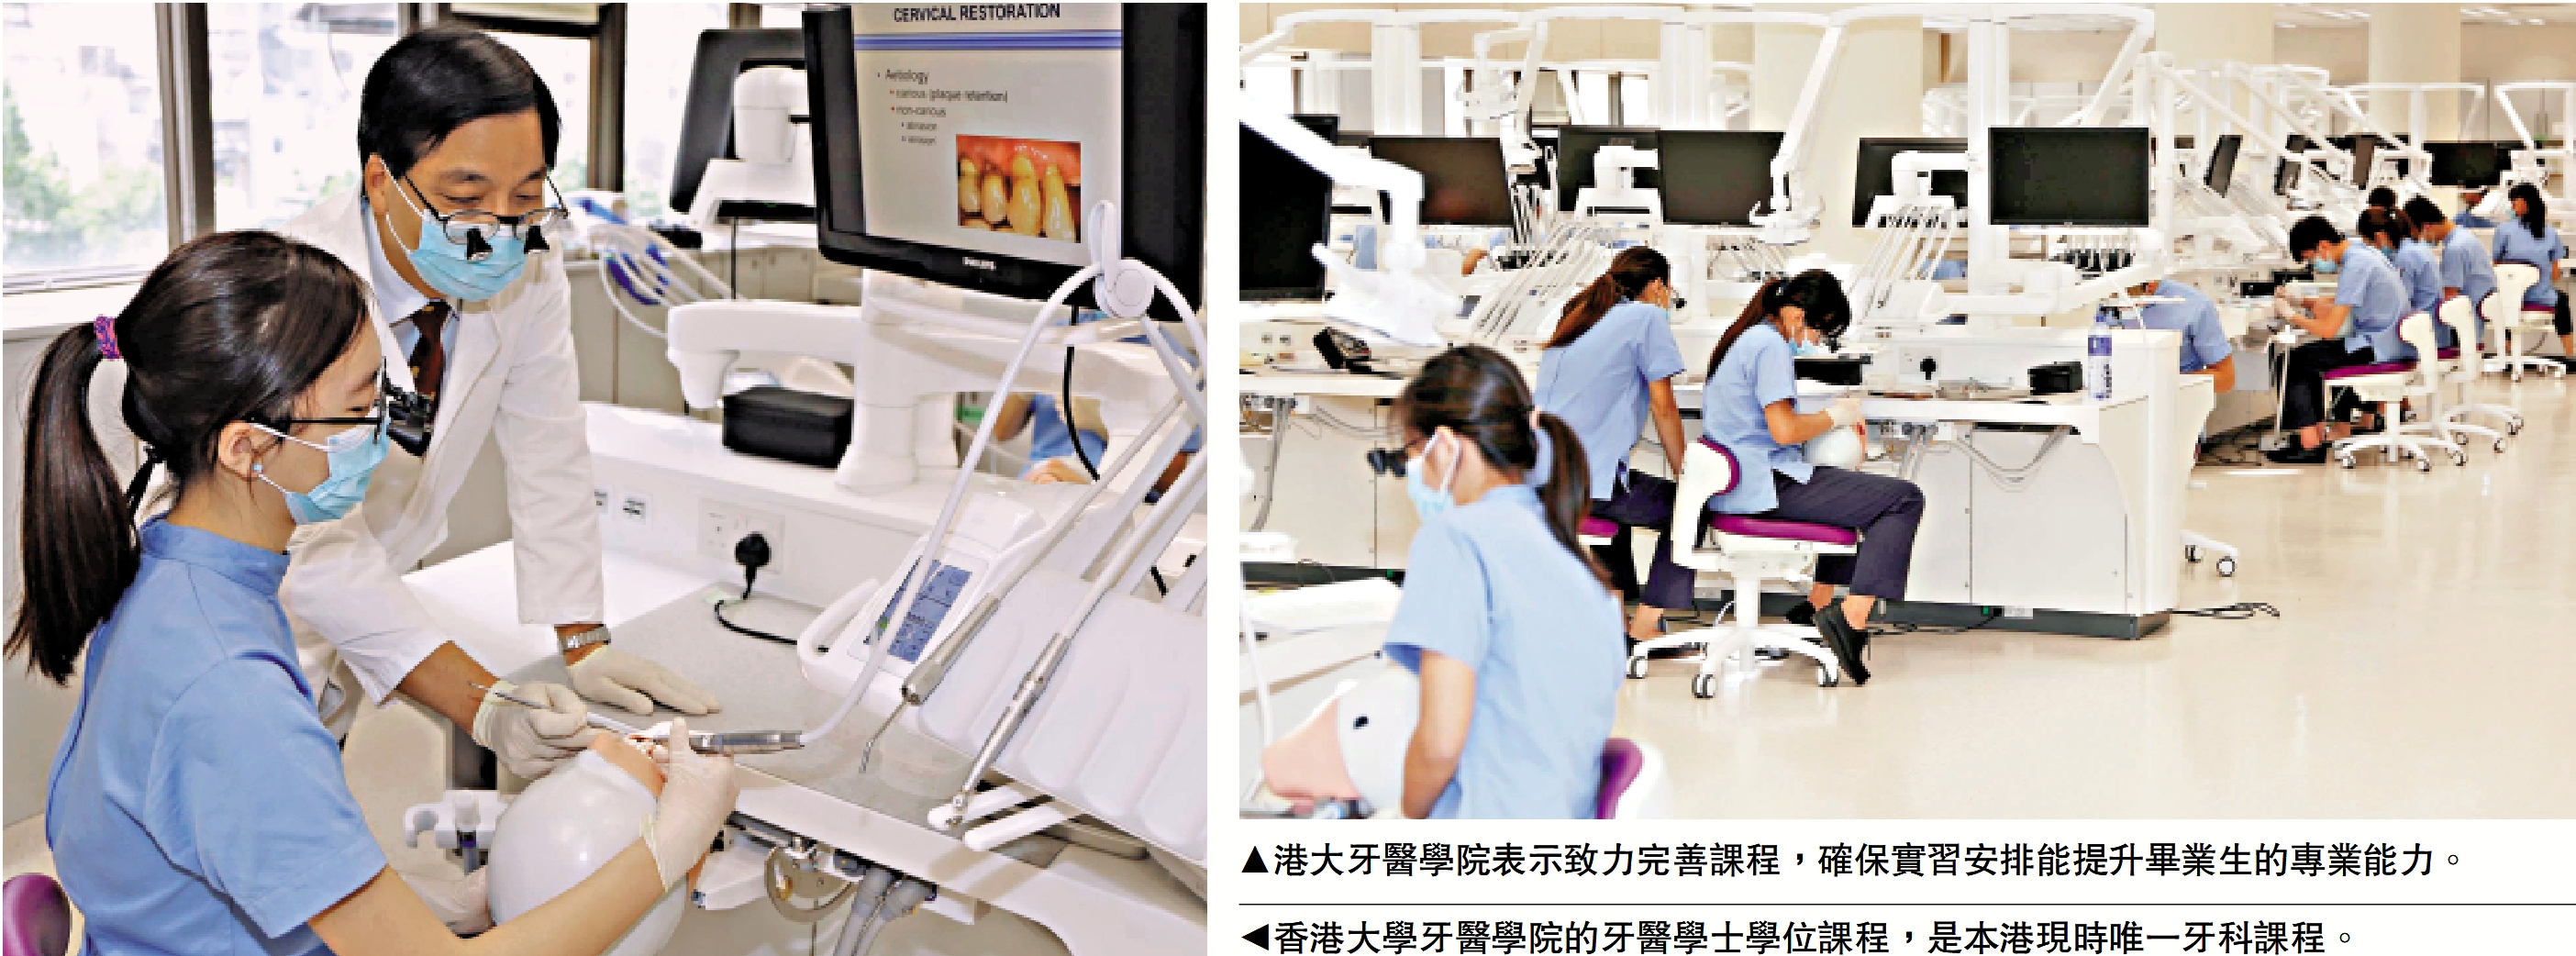 　　右圖：港大牙醫學院表示致力完善課程，確保實習安排能提升畢業生的專業能力。左圖：香港大學牙醫學院的牙醫學士學位課程，是本港現時唯一牙科課程。